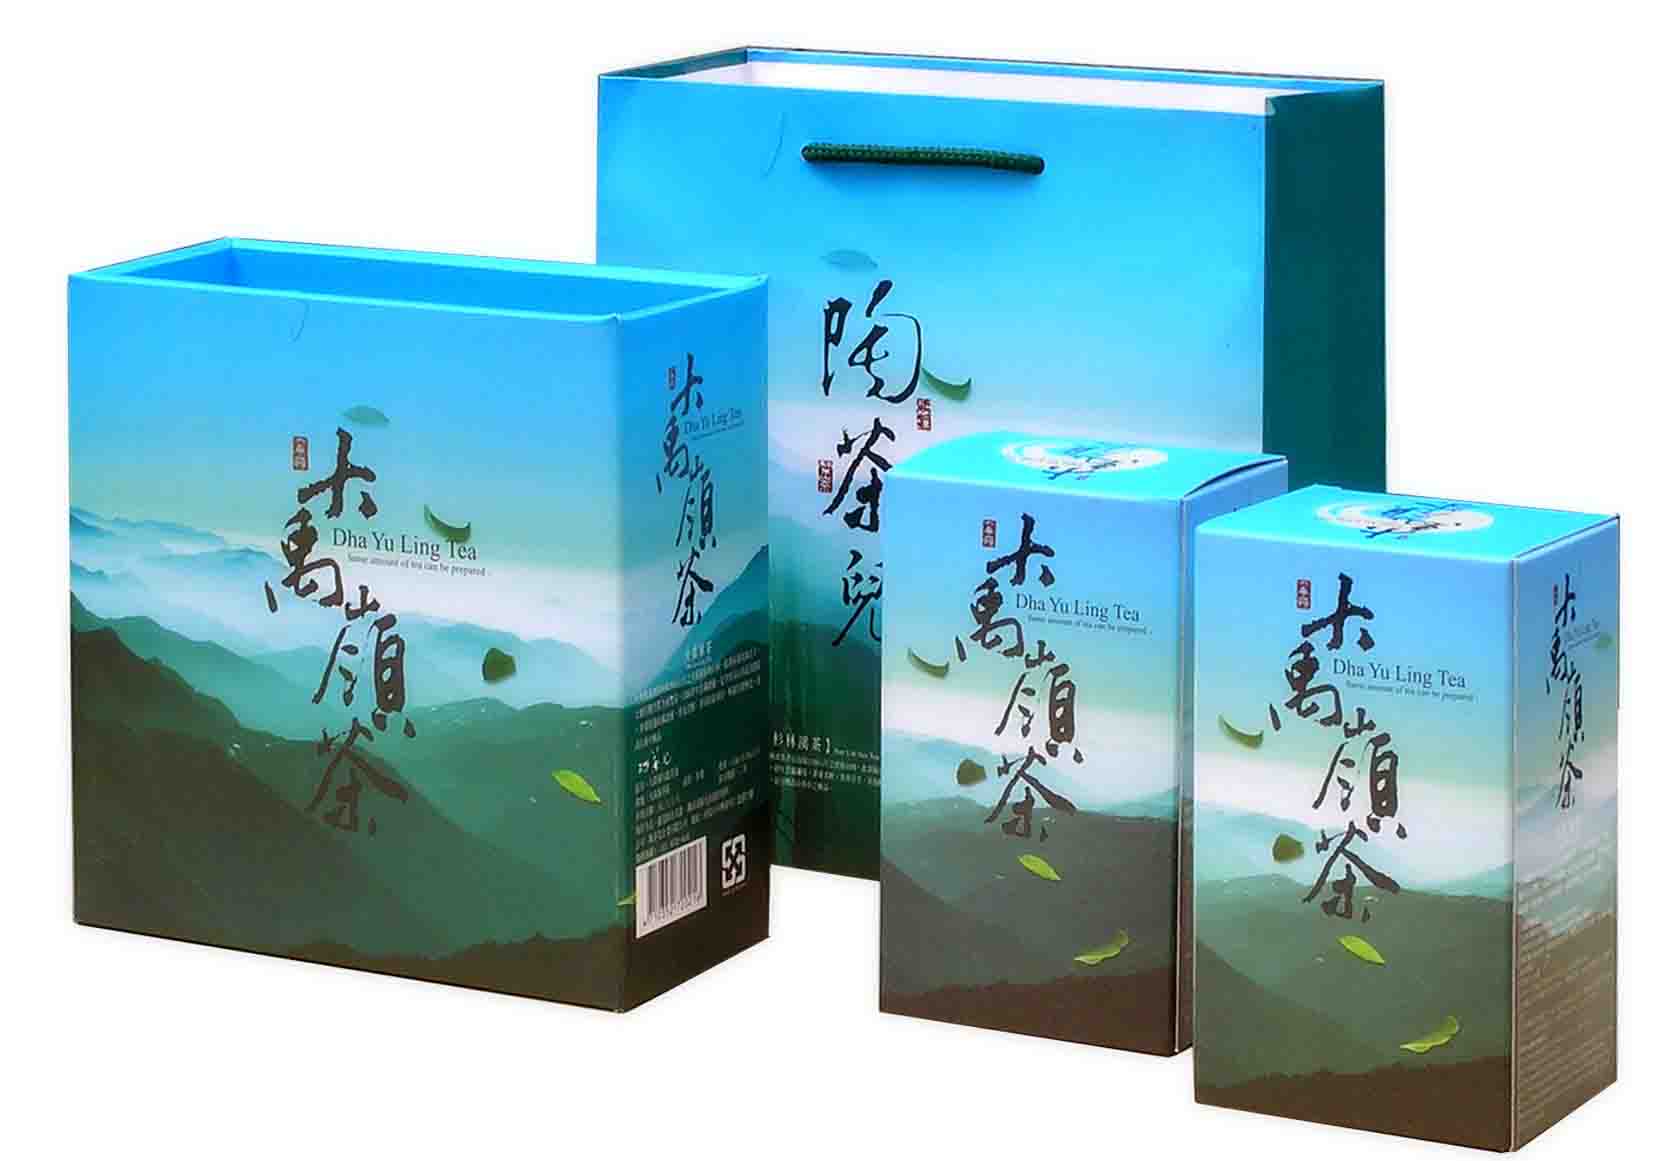  Taiwan Dayuling High Mountain Tea (Тайвань Dayuling Высокогорные чай)